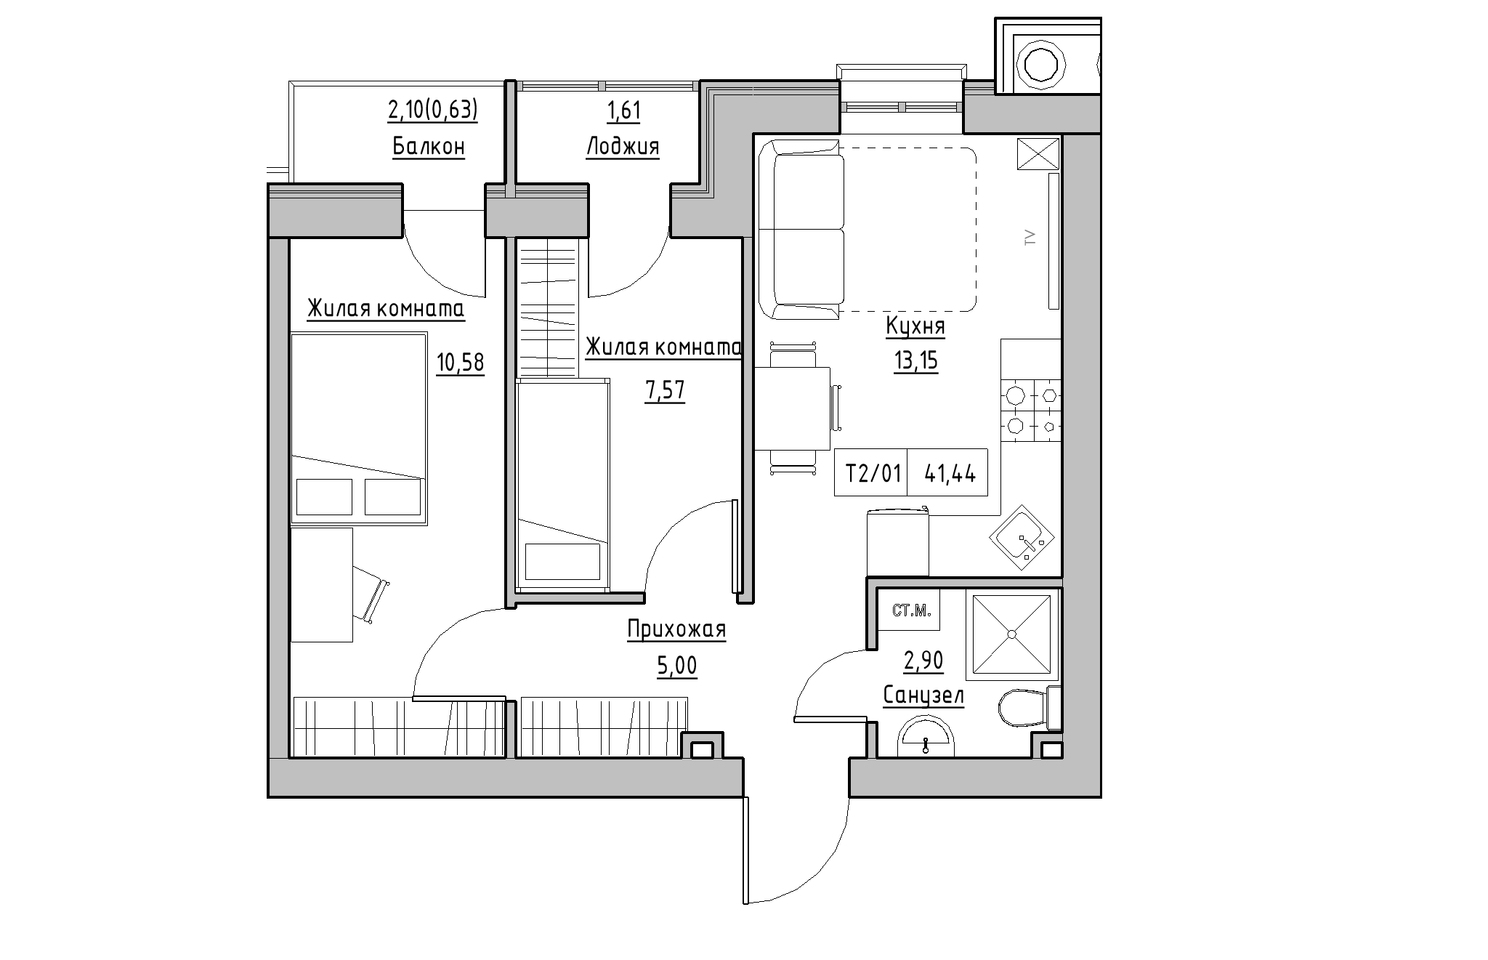 Планировка 2-к квартира площей 41.44м2, KS-010-03/0005.